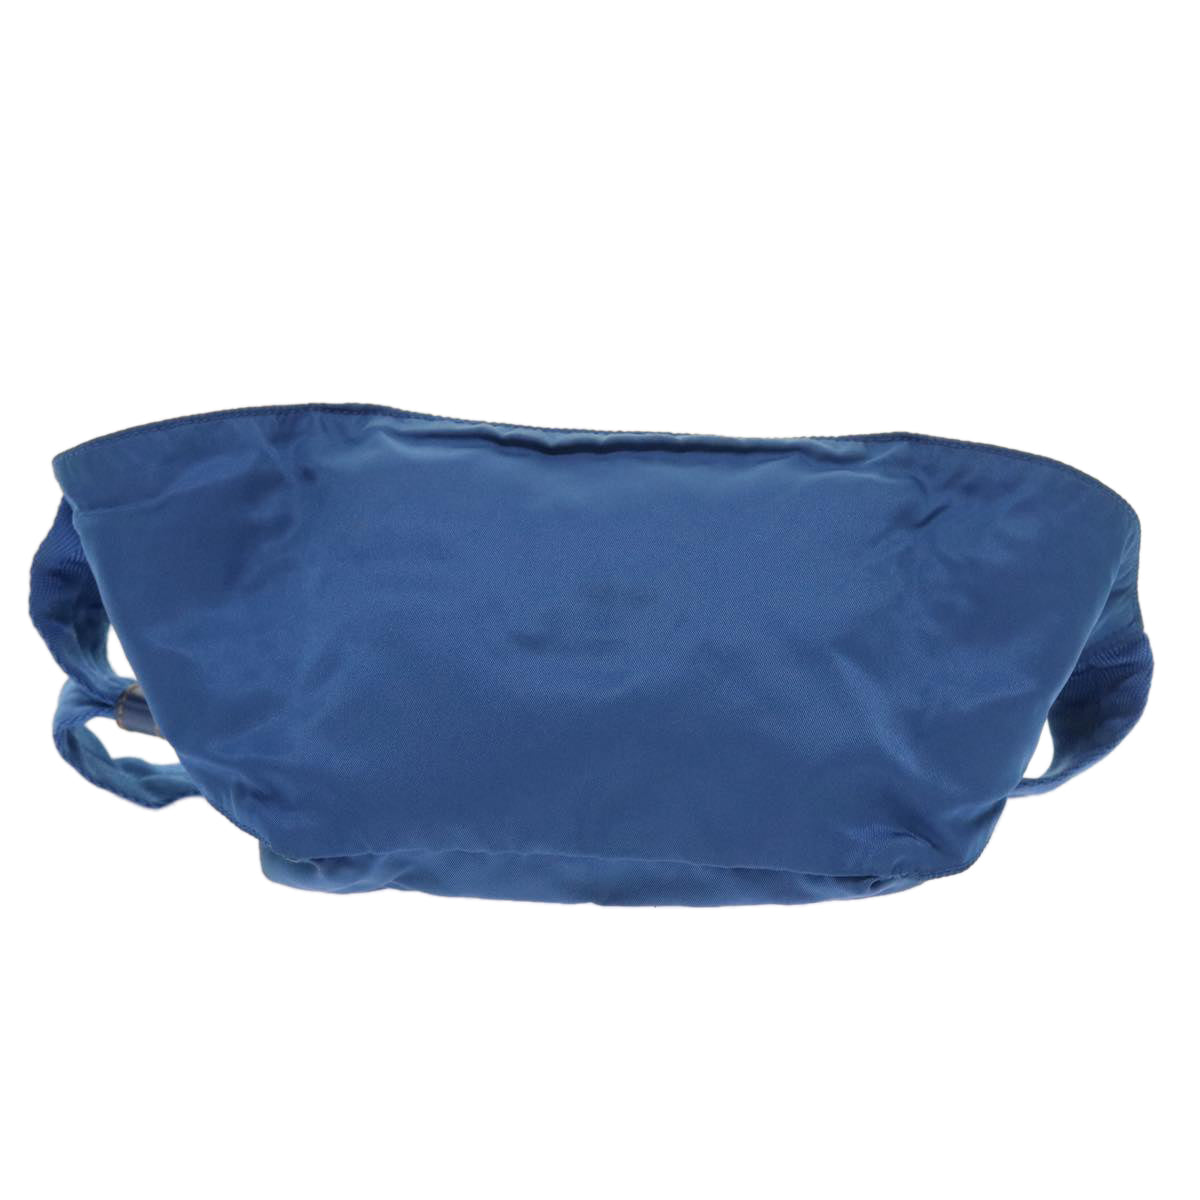 PRADA Waist bag Nylon Light Blue Auth 56455 - 0